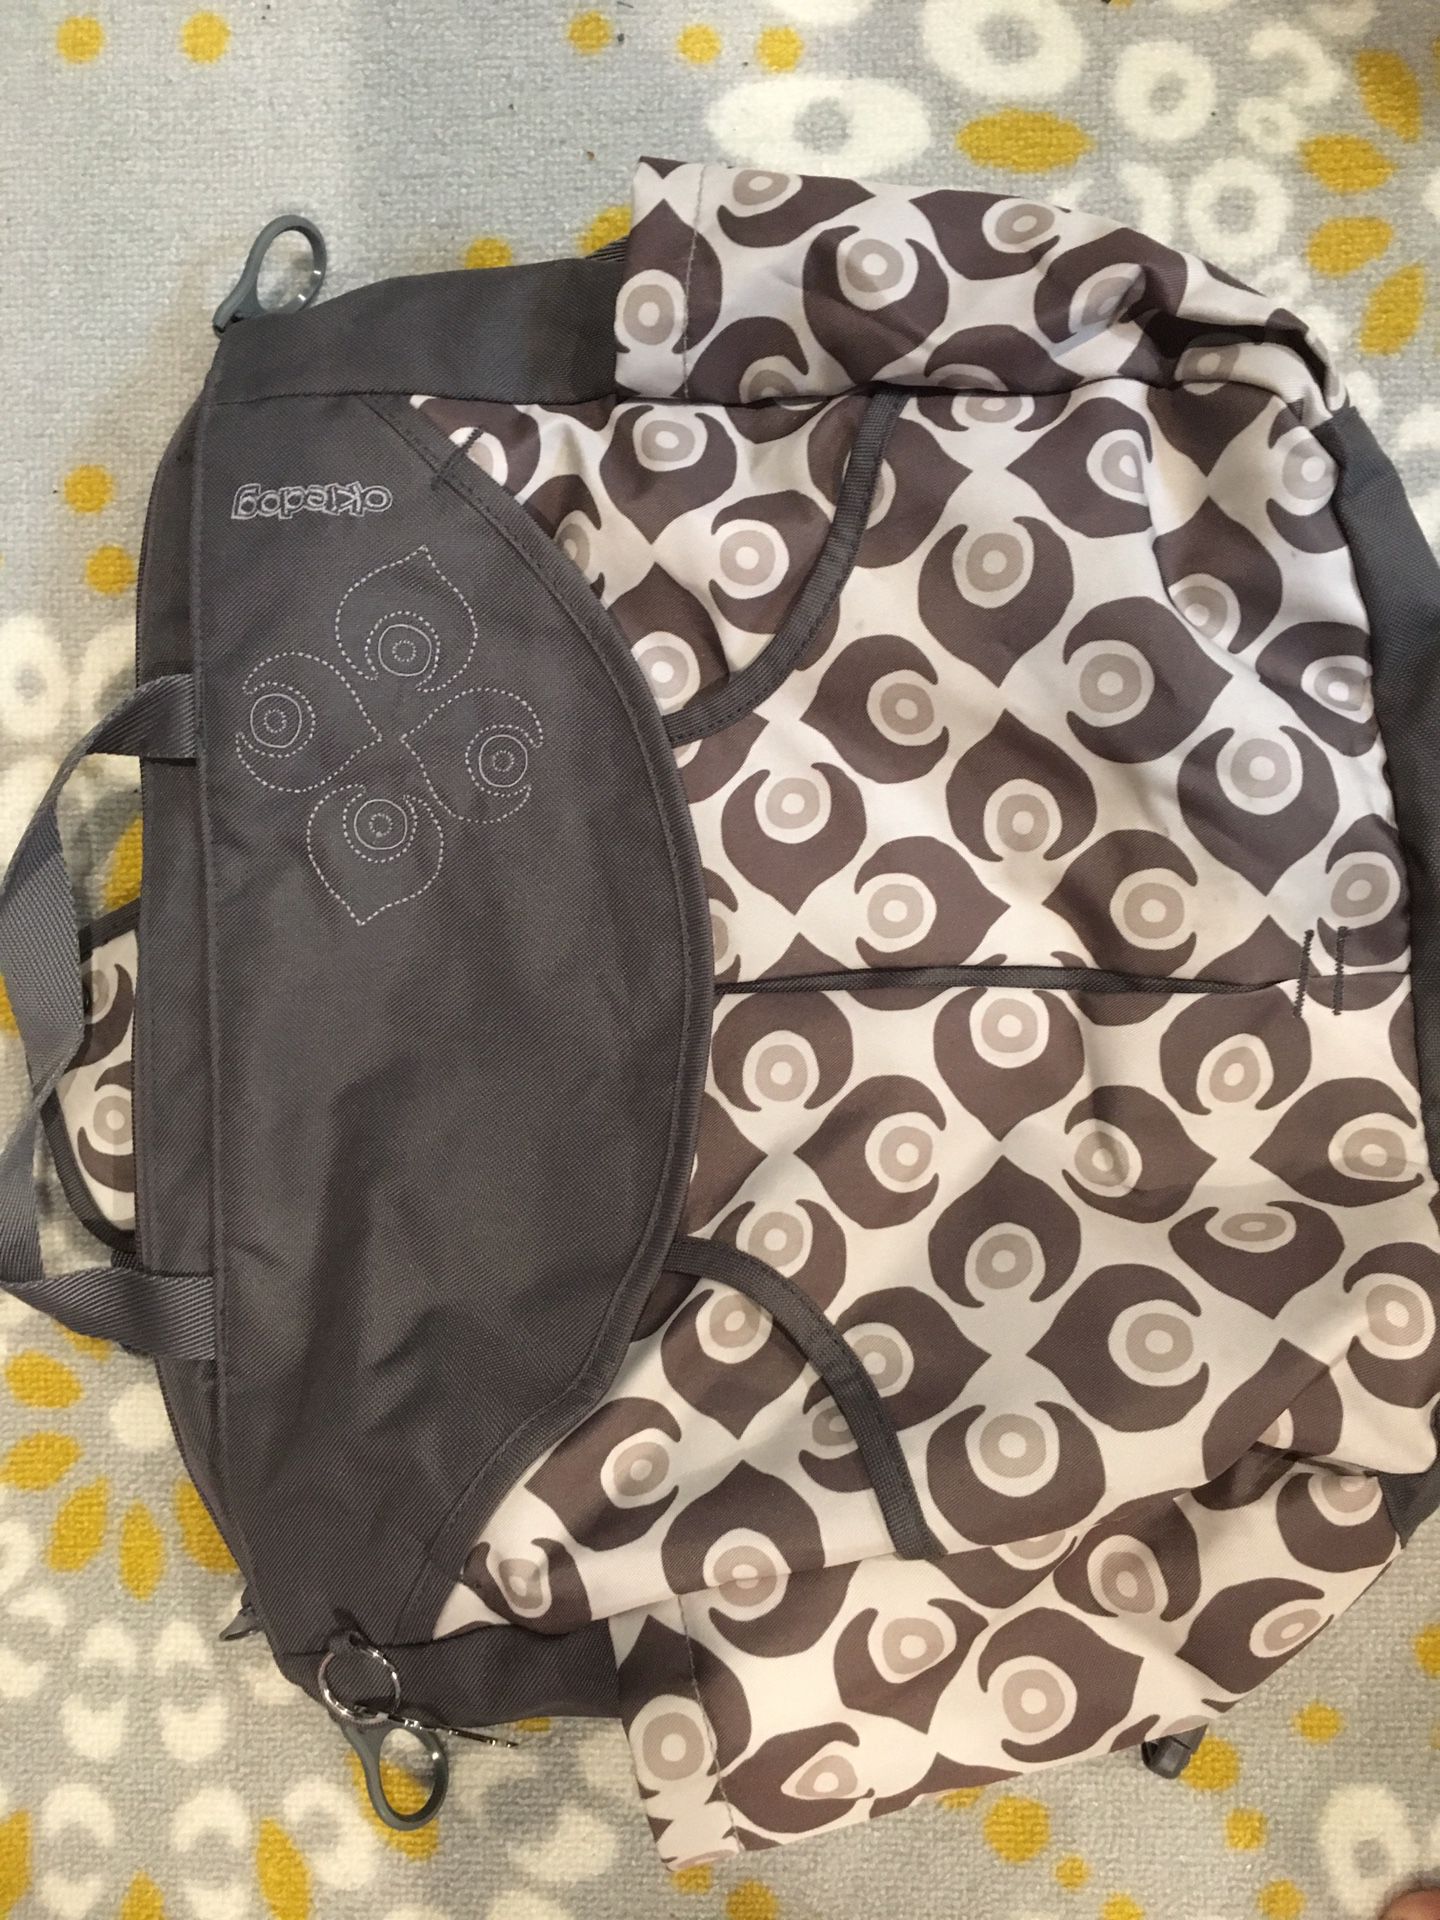 Damask Okiedog diaper bag